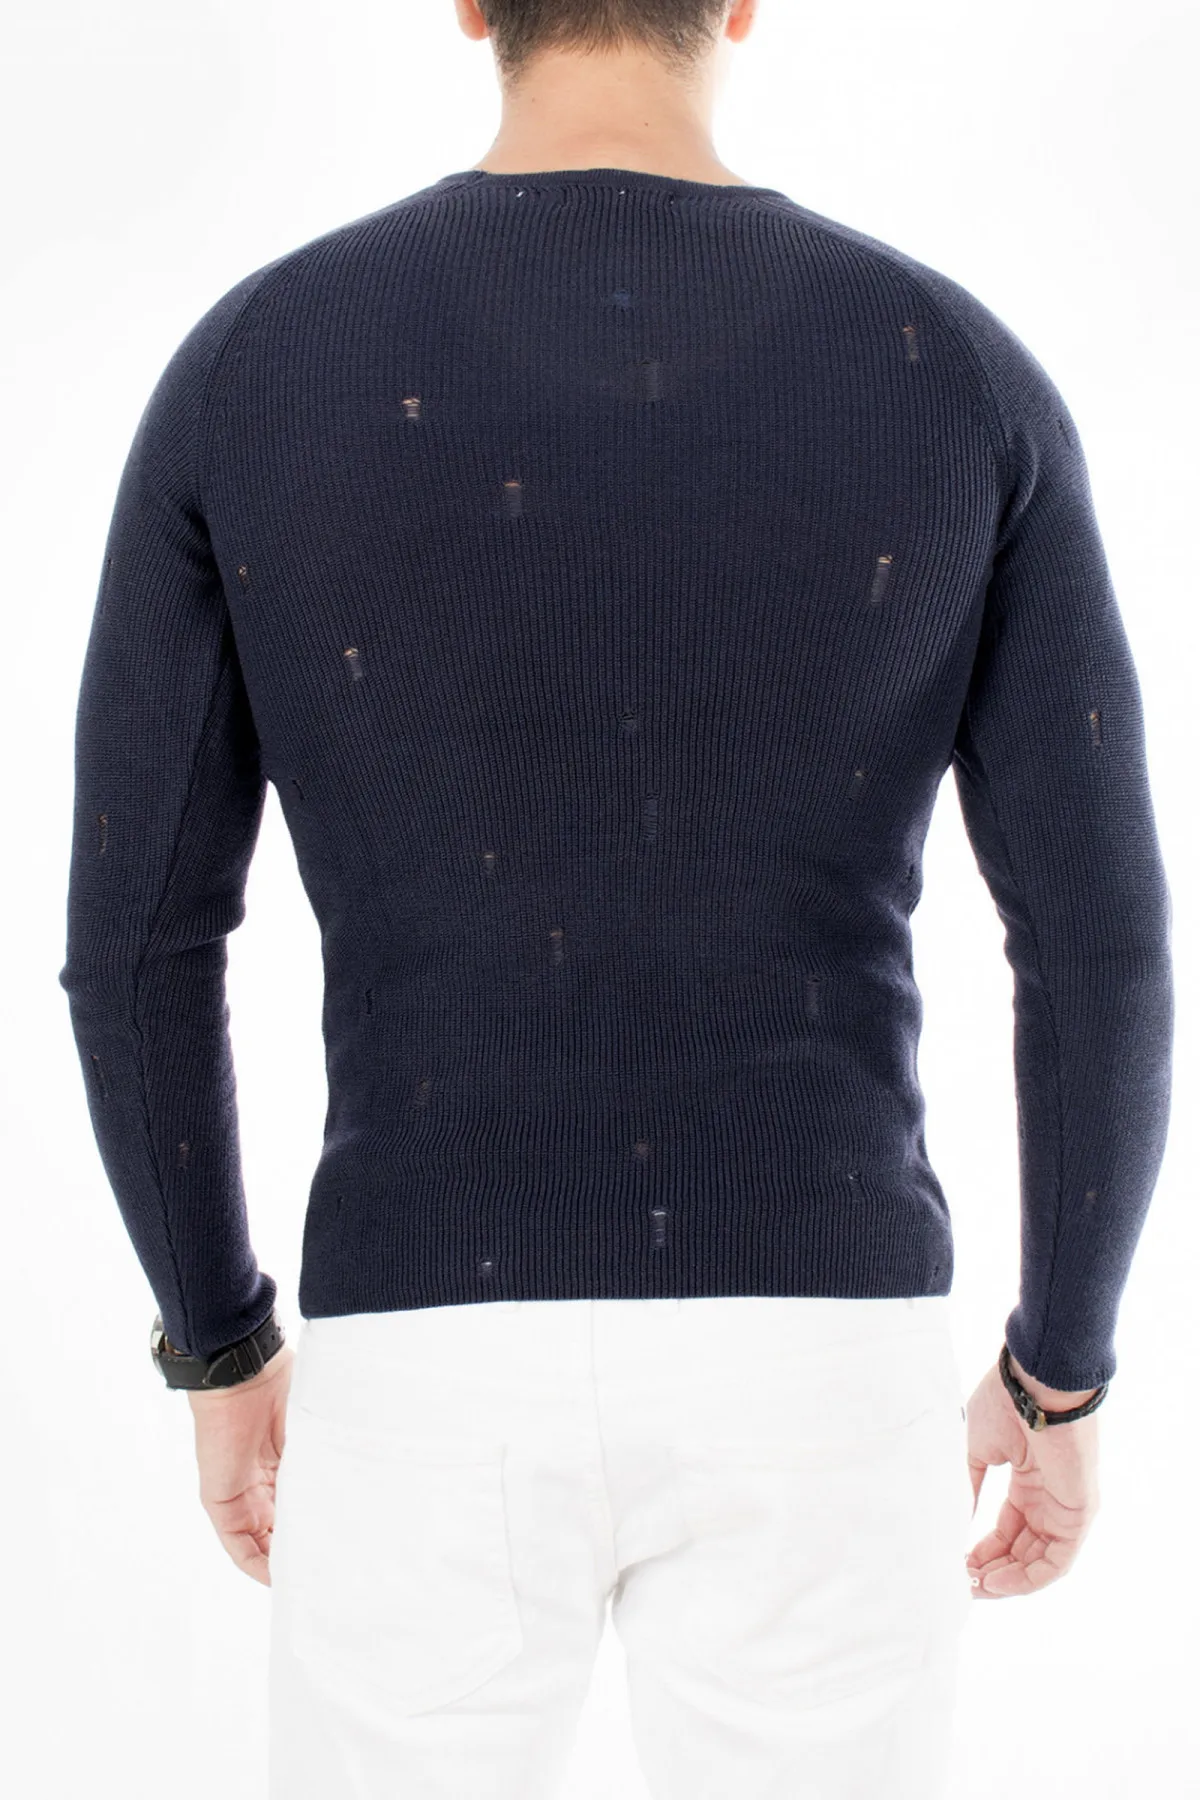 

DeepSEA Ripped Detailed Italian Mercerized Sweater 1808051